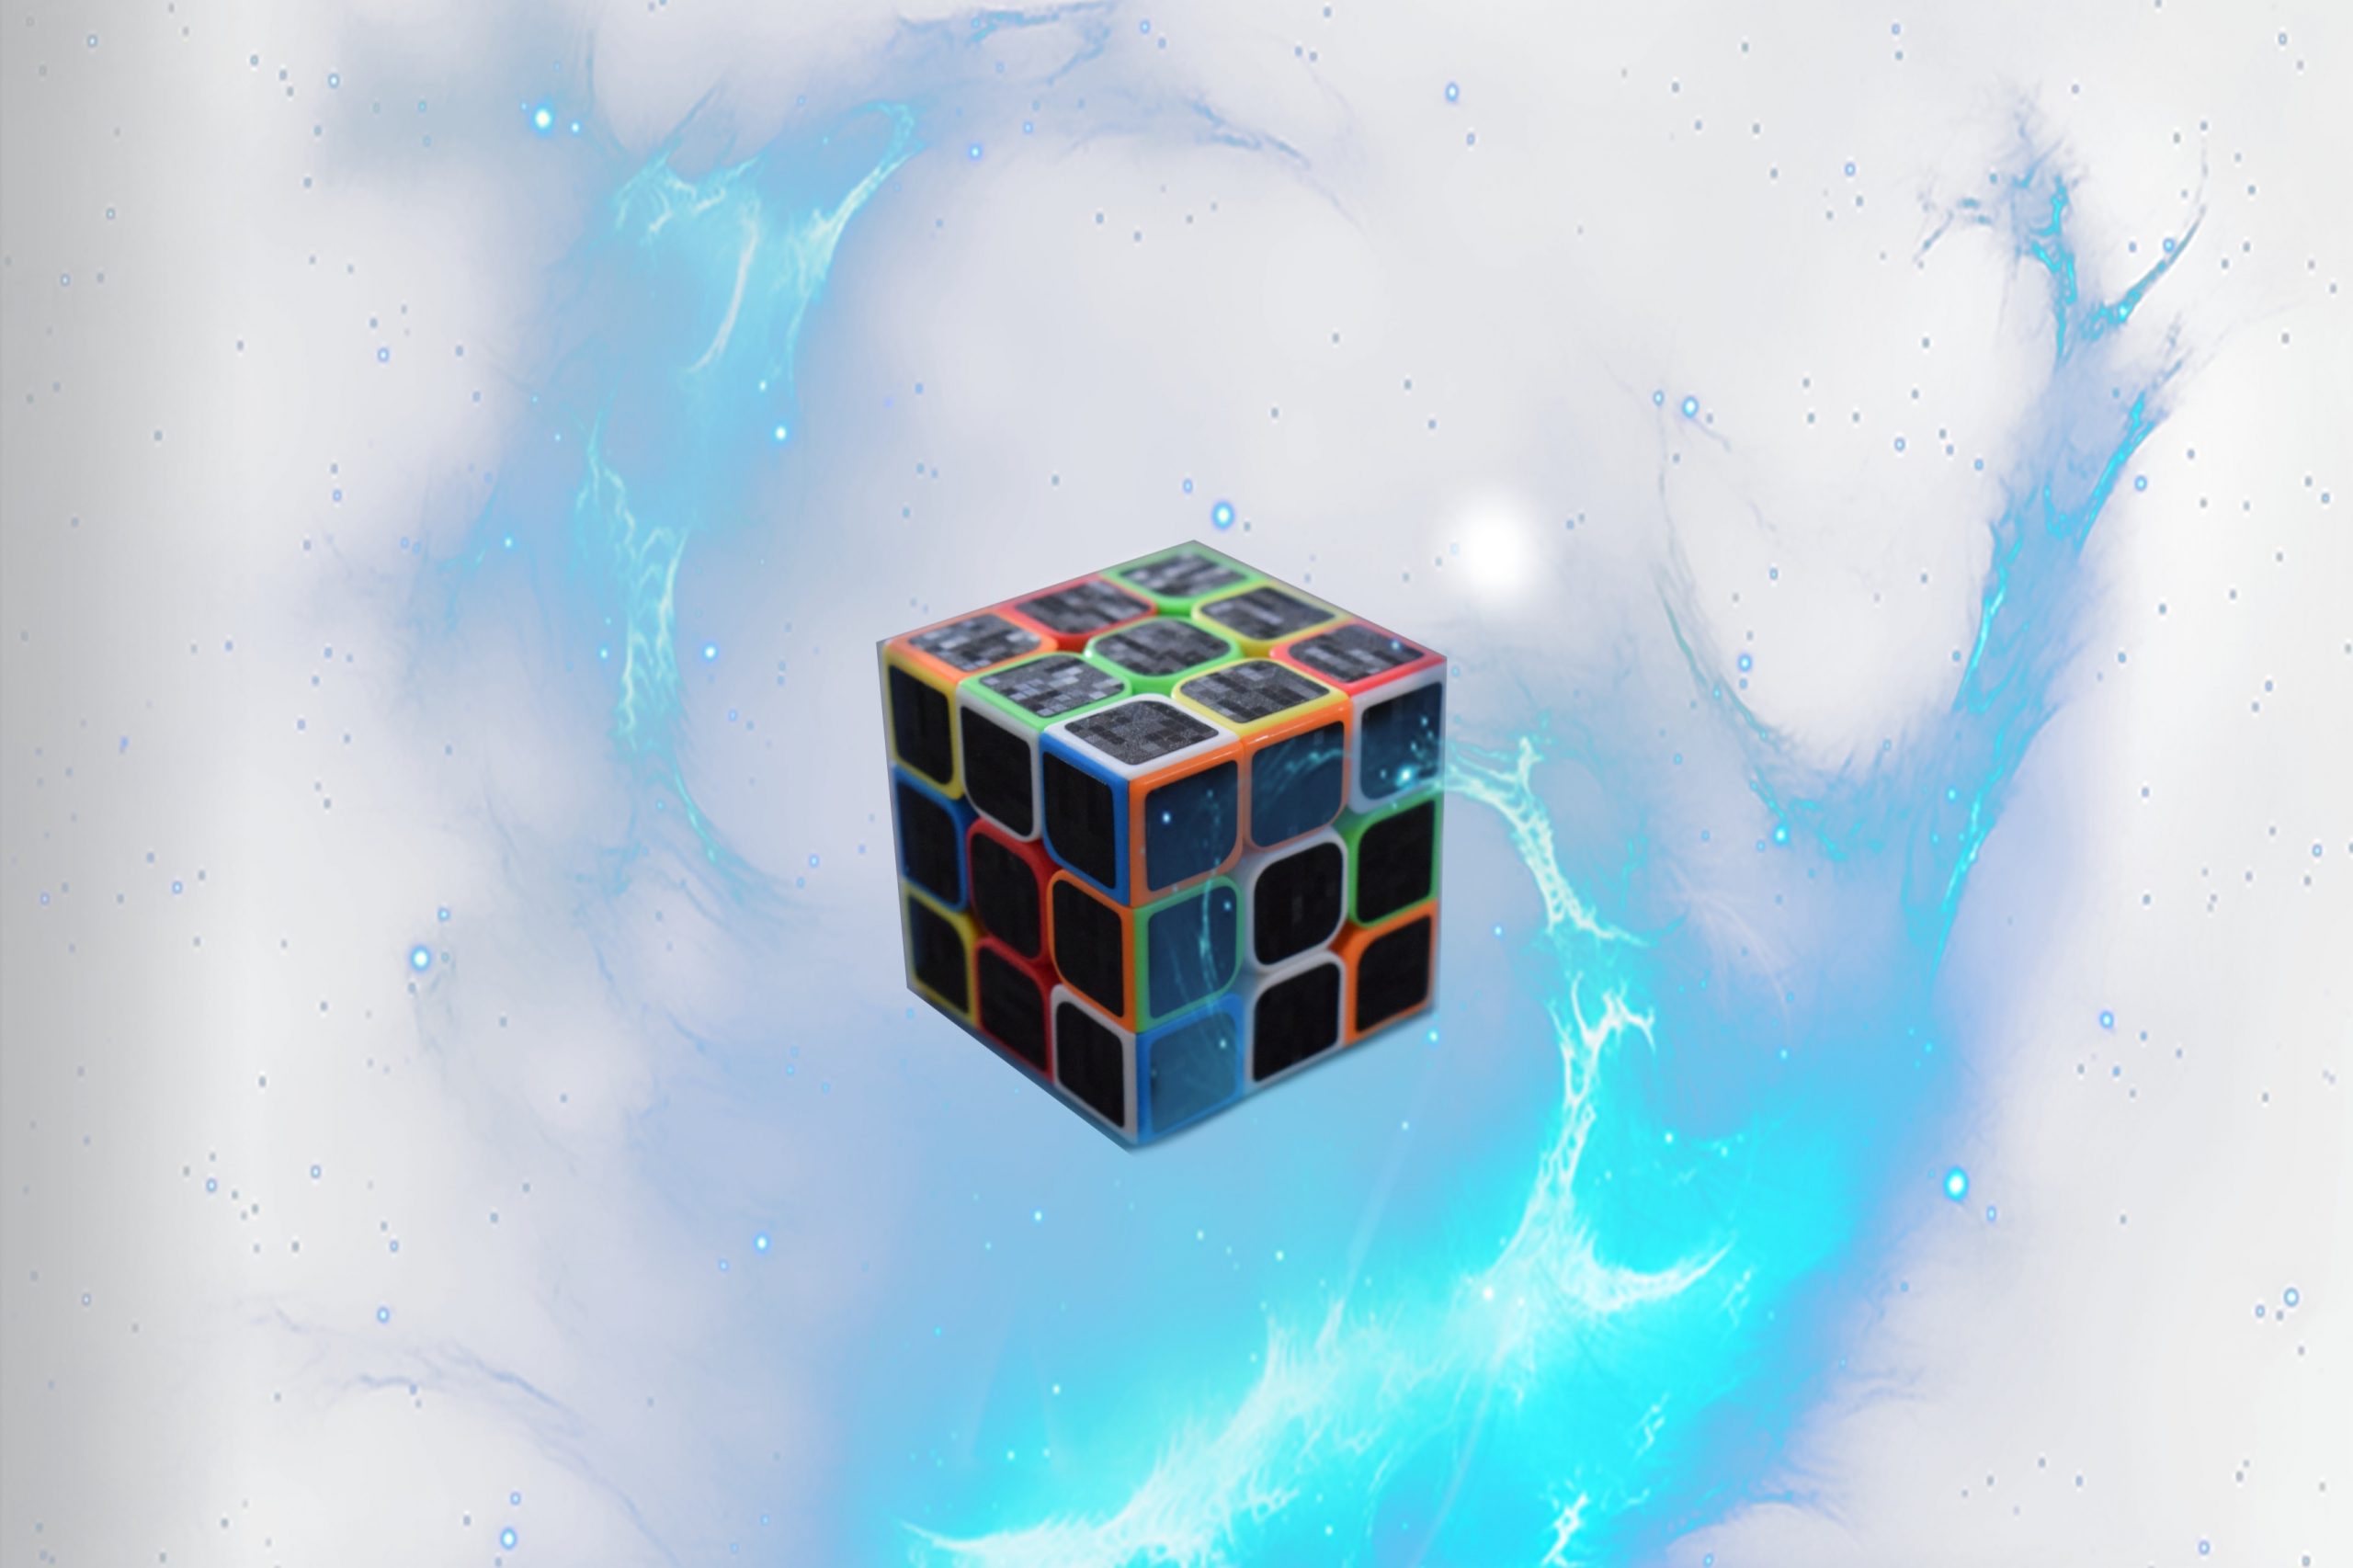 Cubul Rubik: exercițiu pentru o minte ageră – Rezolvare